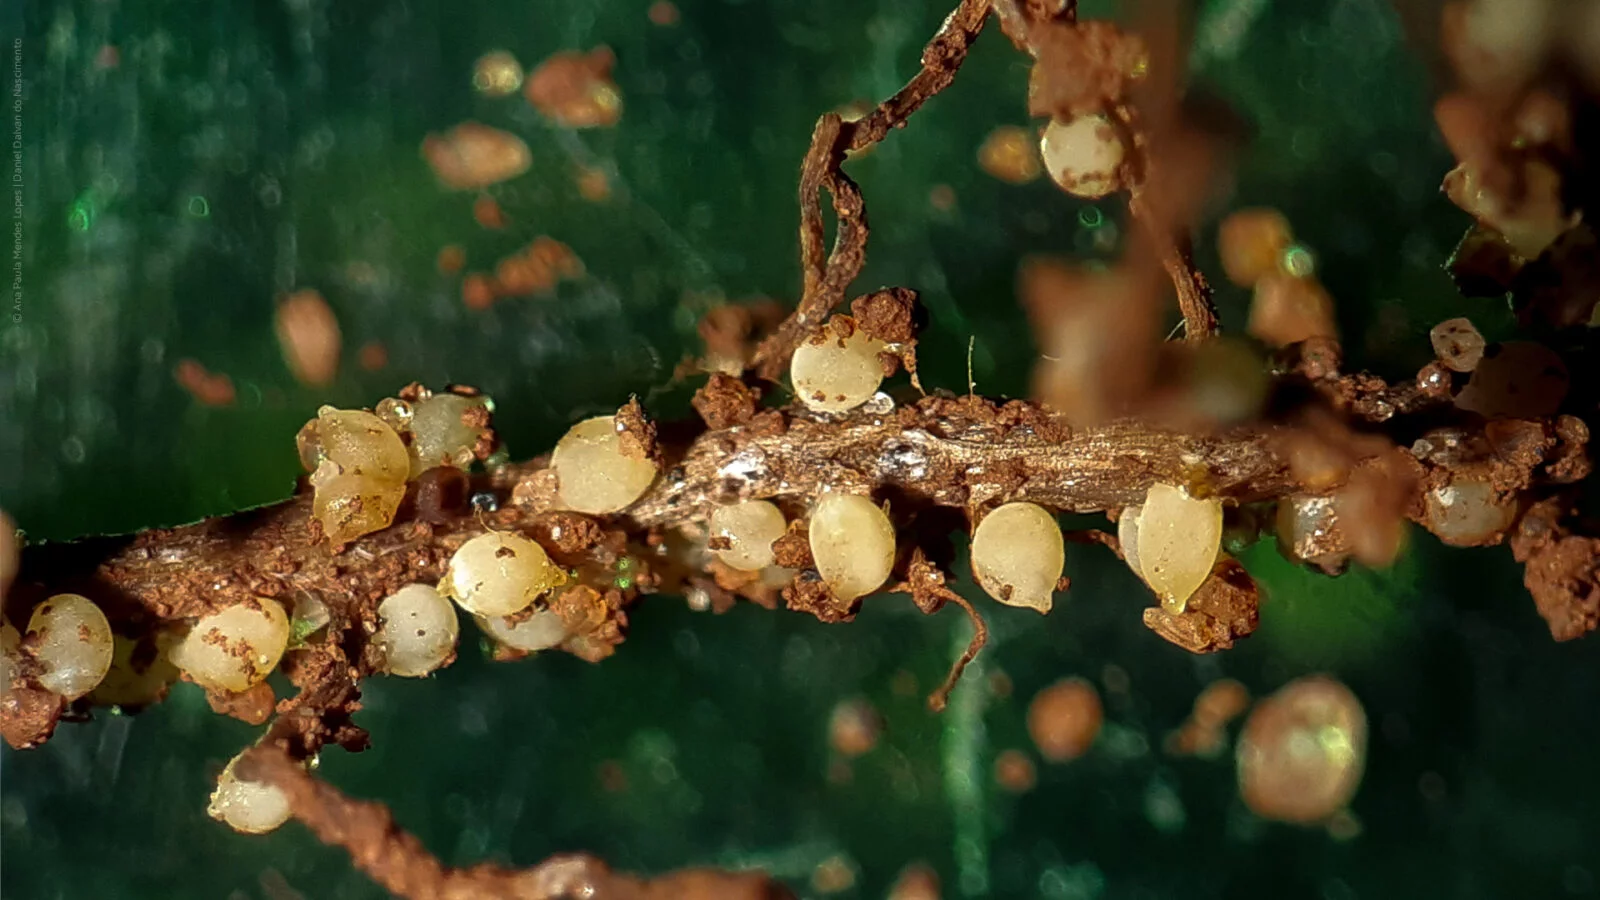 Raiz de planta infestada pelo nematoide cisto